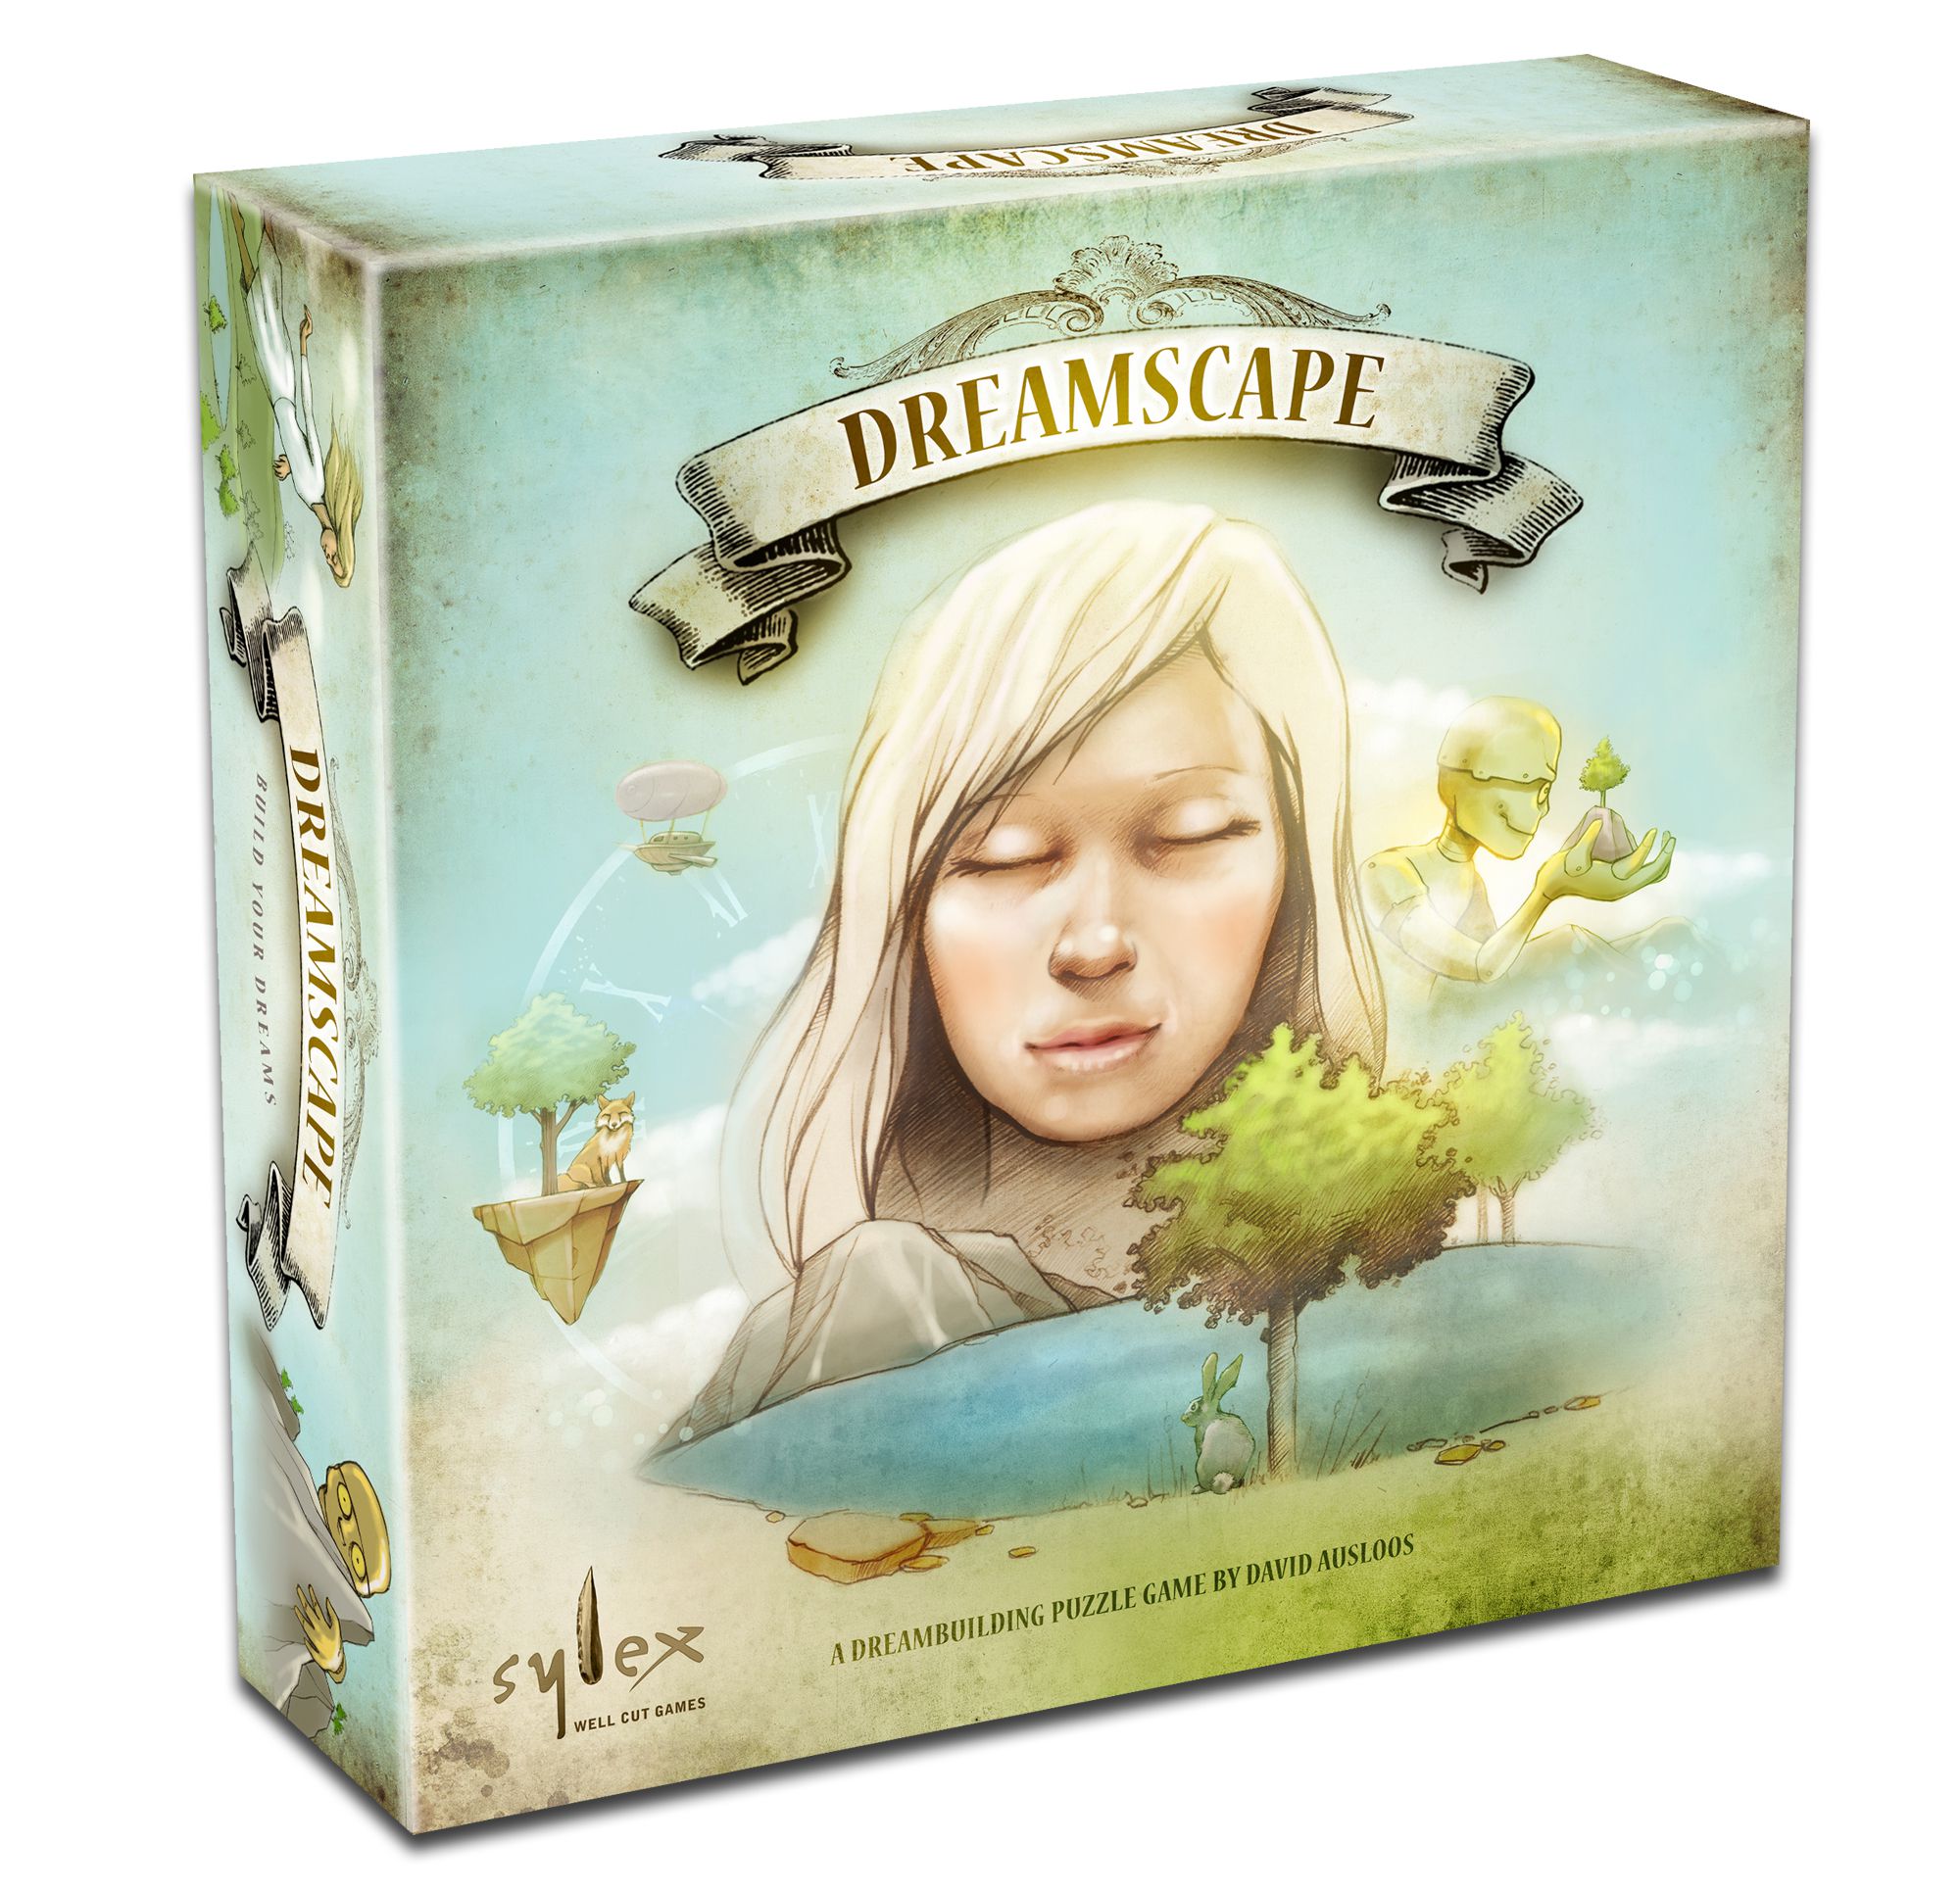 Sylex Dreamscape Dreamer pledge